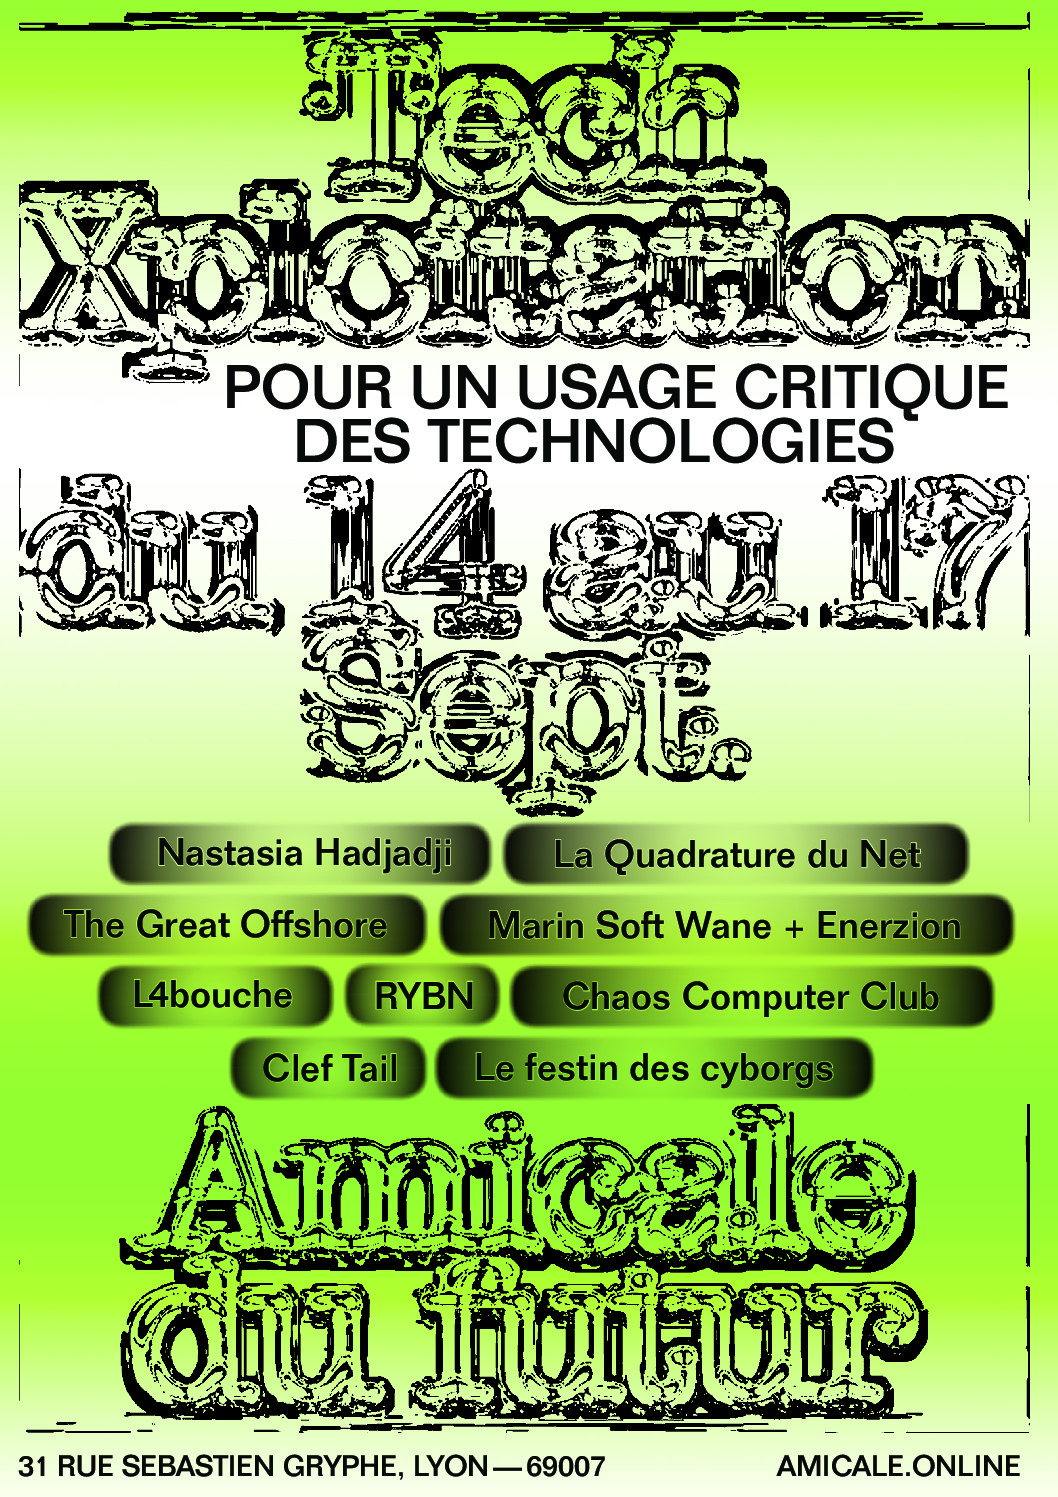 L'Amicale du Futur, 31 rue Sébastien Gryphe Lyon 7e DU 14/09 AU 17/09- TECHXPLOITATION, POUR UN USAGE CRITIQUE DES TECHNOLOGIES